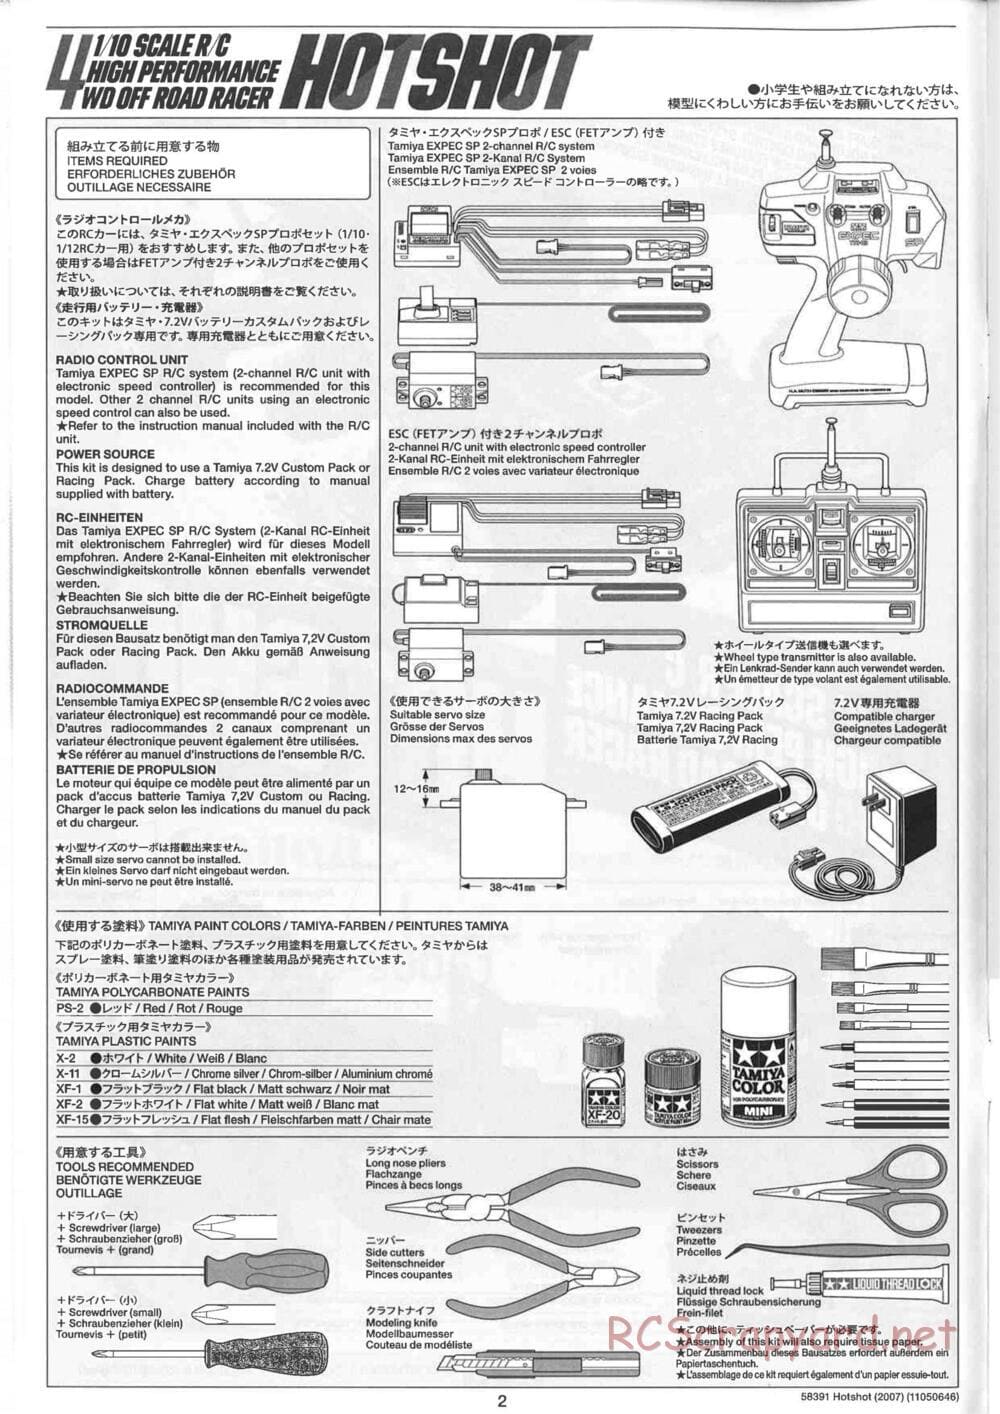 Tamiya - Hotshot - 2007 - HS Chassis - Manual - Page 2